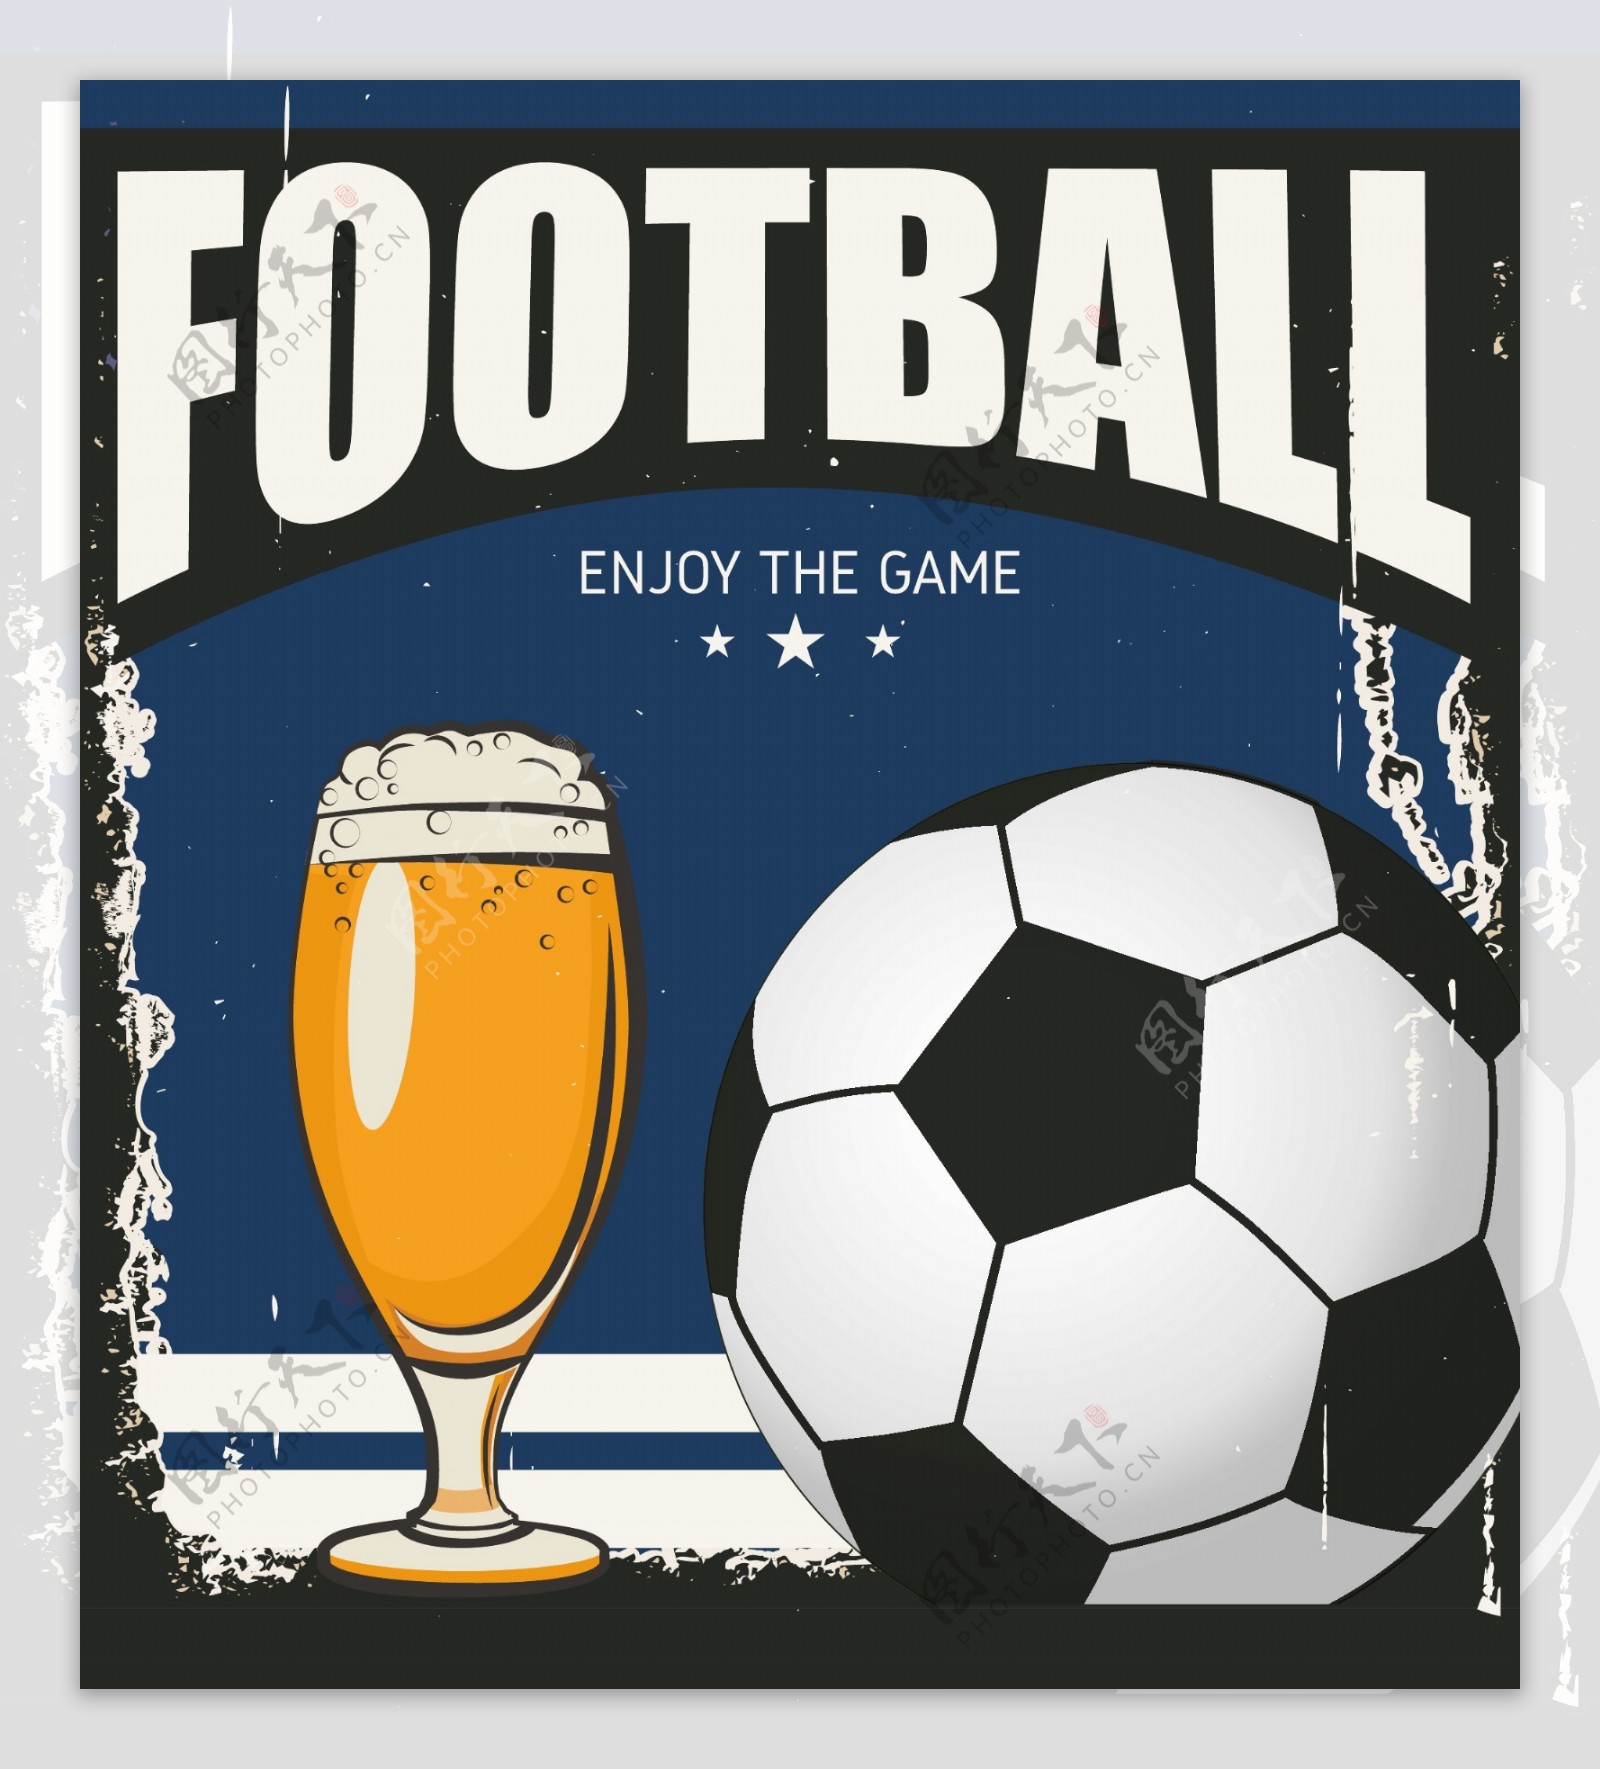 啤酒足球海报矢量素材